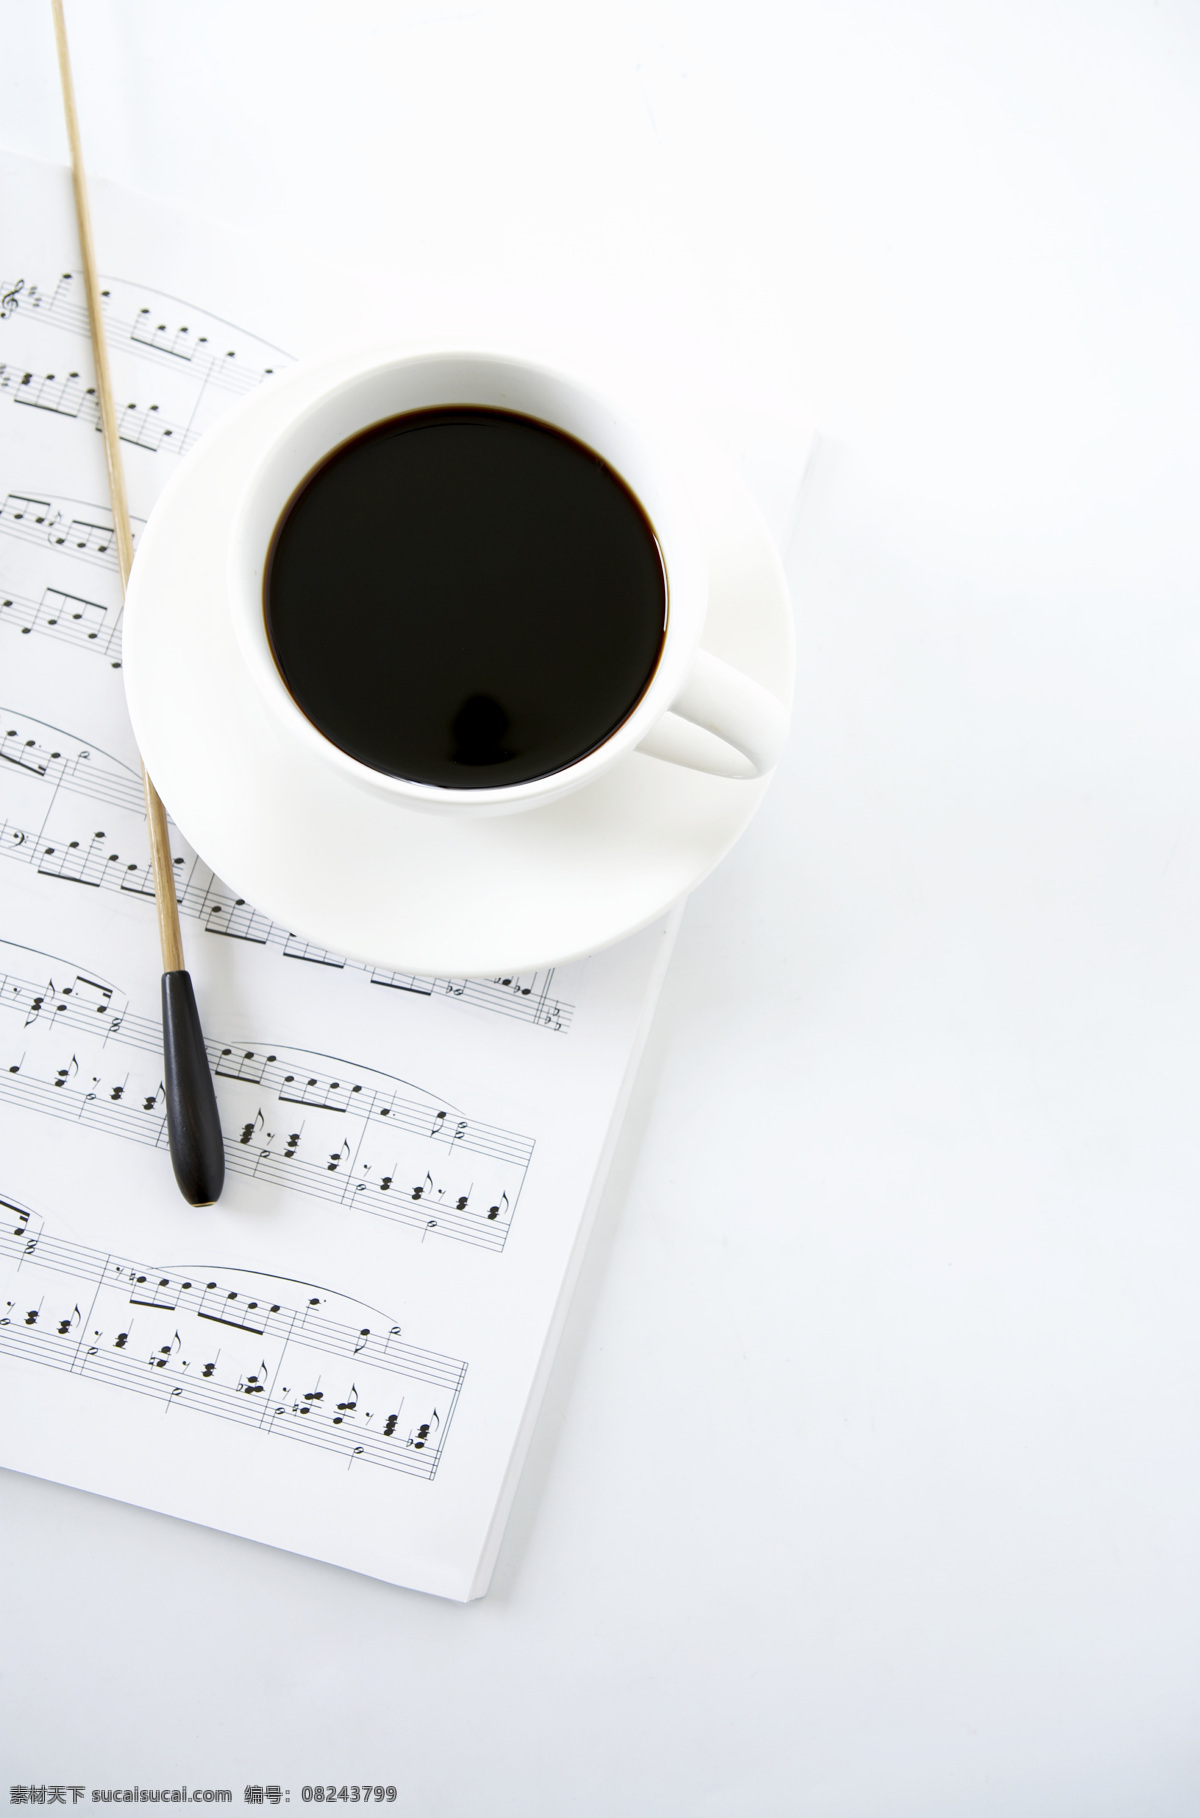 乐谱 咖啡 咖啡杯 文化艺术 舞蹈 舞蹈音乐 音乐 音乐符号 指挥棒 音乐指挥 psd源文件